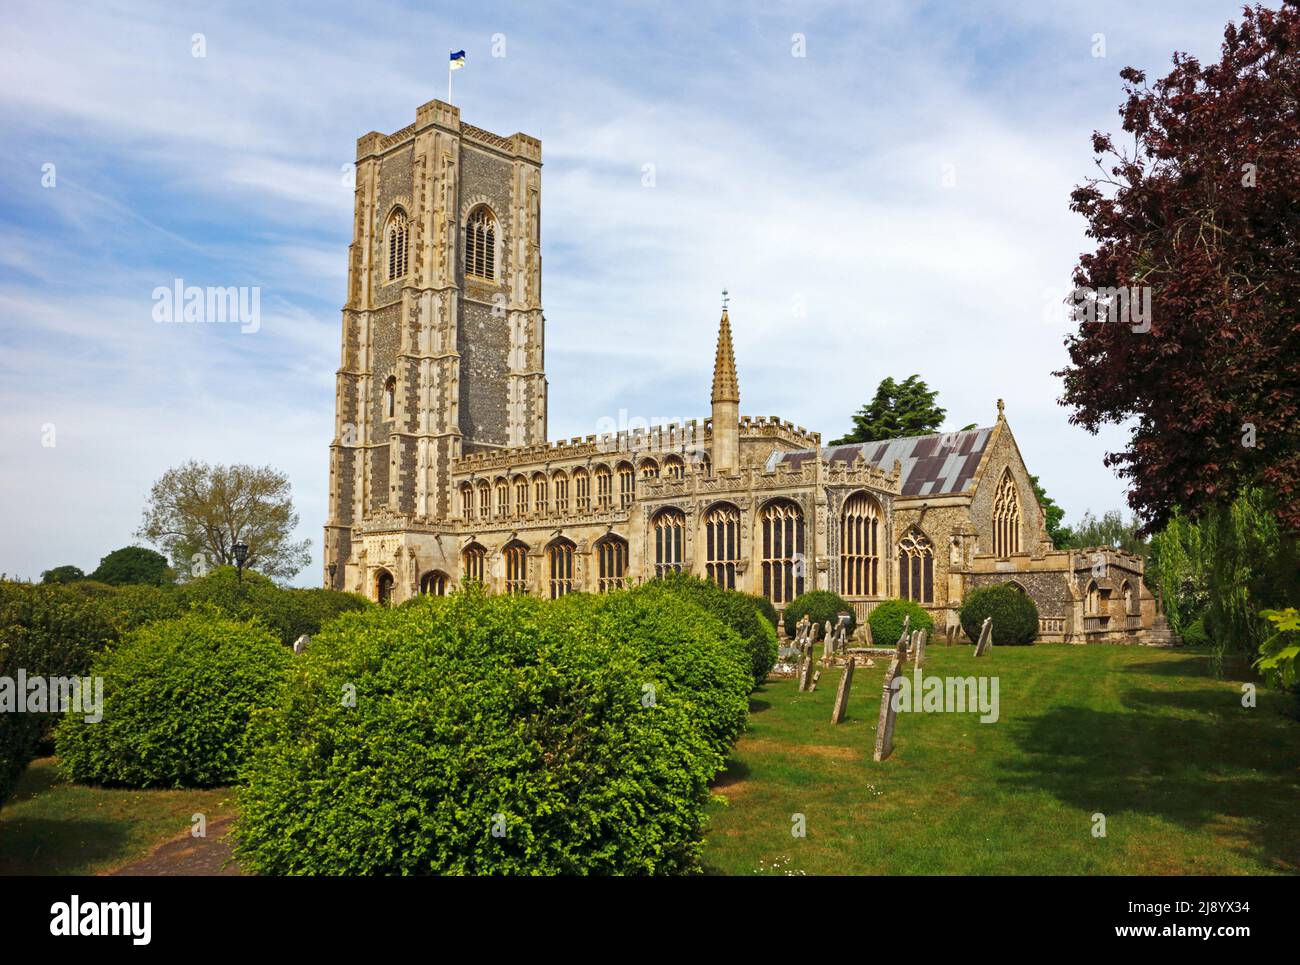 Blick auf die Pfarrkirche St. Peter und St. Paul im Dorf Lavenham, Suffolk, England, Vereinigtes Königreich. Stockfoto